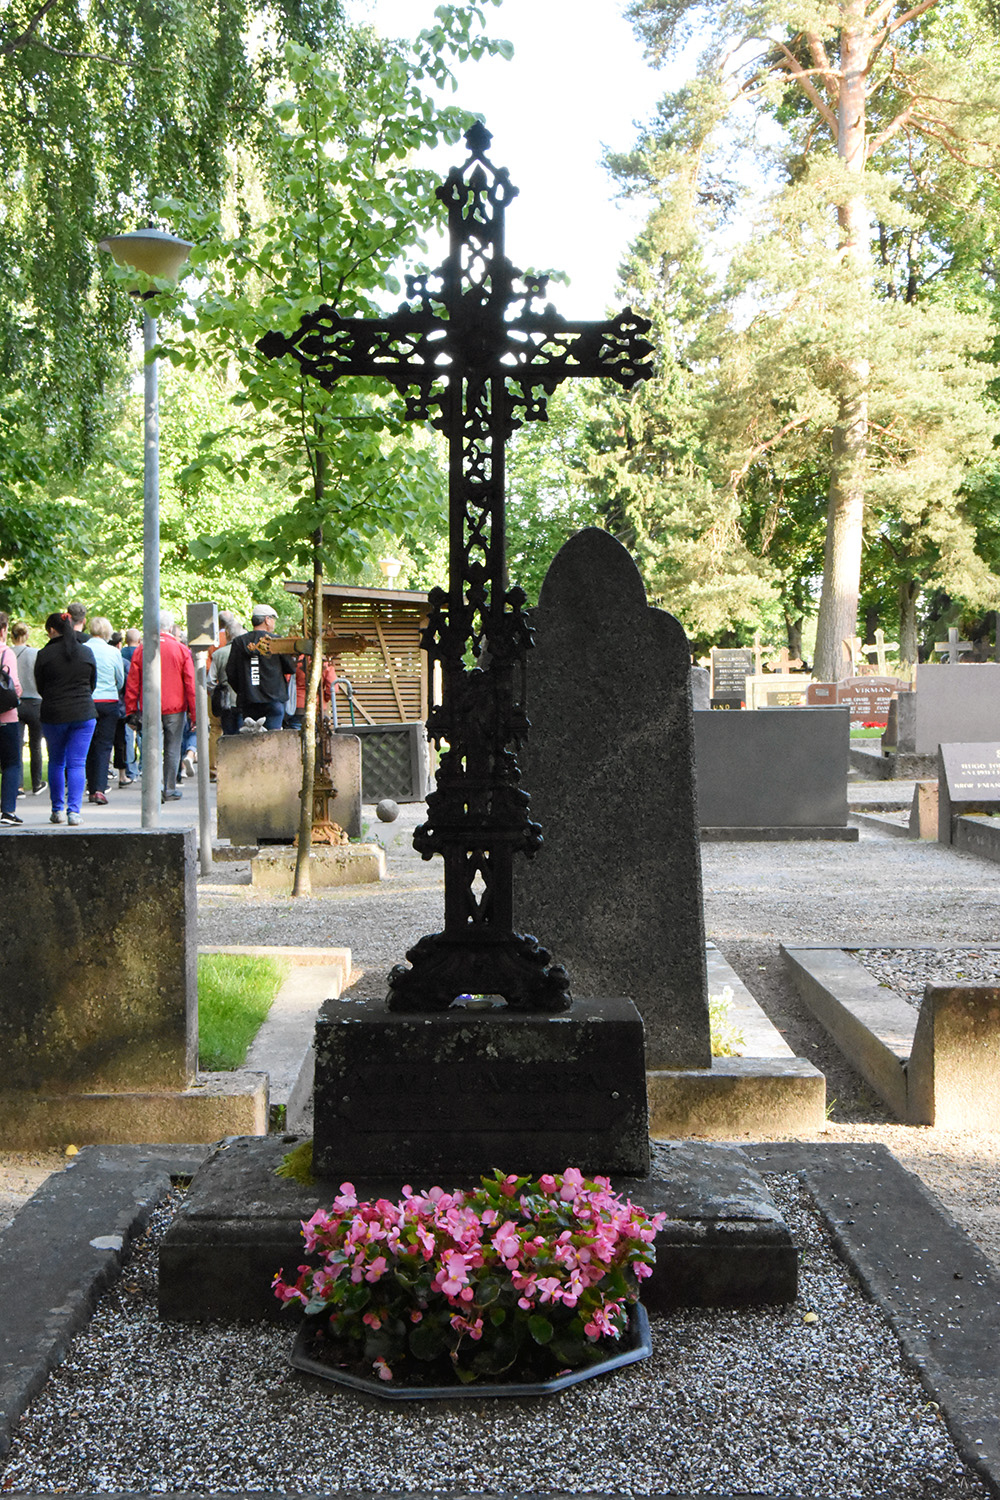 Svart utsmyckat tunt kors av järn på en begravninsplats. Framför korset finns rosa blommor.